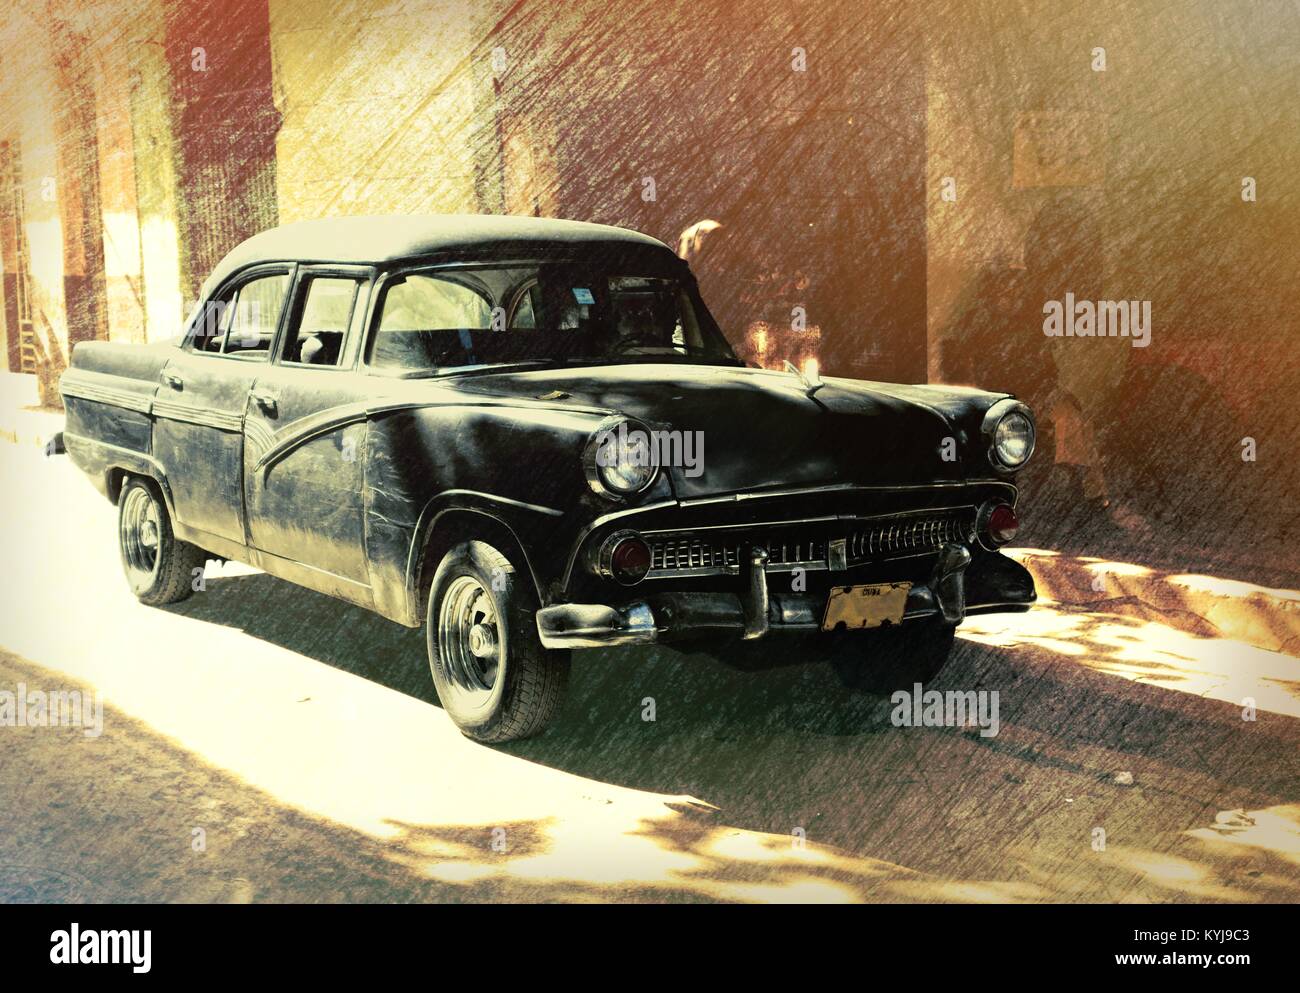 L'Avana, Cuba - 27 dicembre 2013: Classic American auto sulla strada della vecchia Havana, Cuba parcheggiato di fronte all edificio colorato. Foto Stock